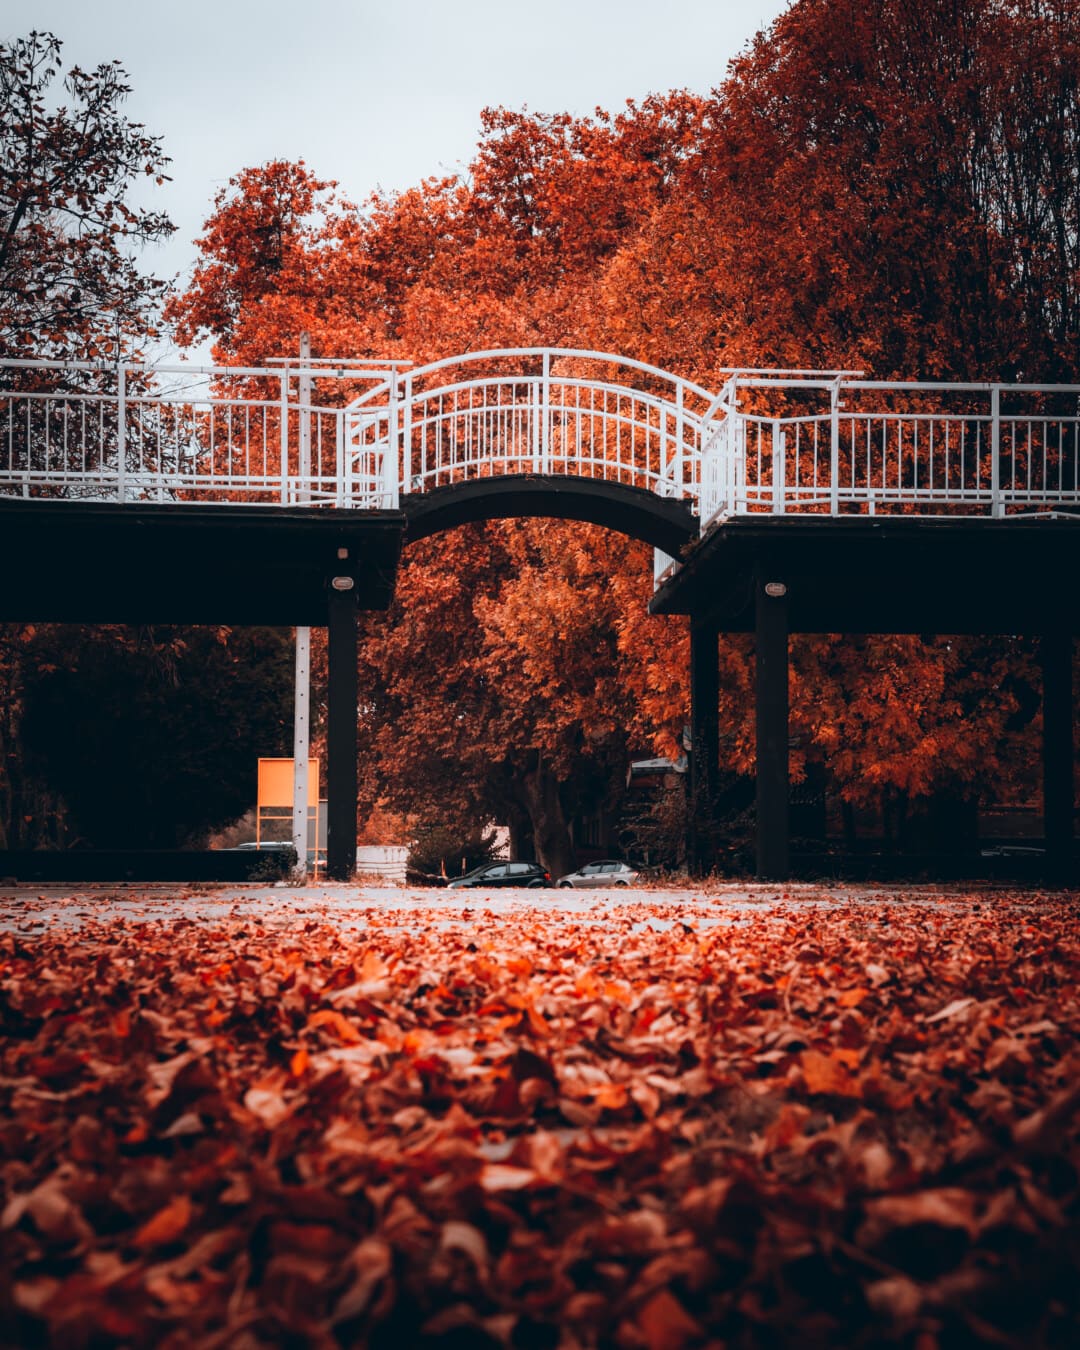 parku, alej, rekreační oblast, Most, podzimní sezóna, městská oblast, ulice, strom, světlo, dřevo